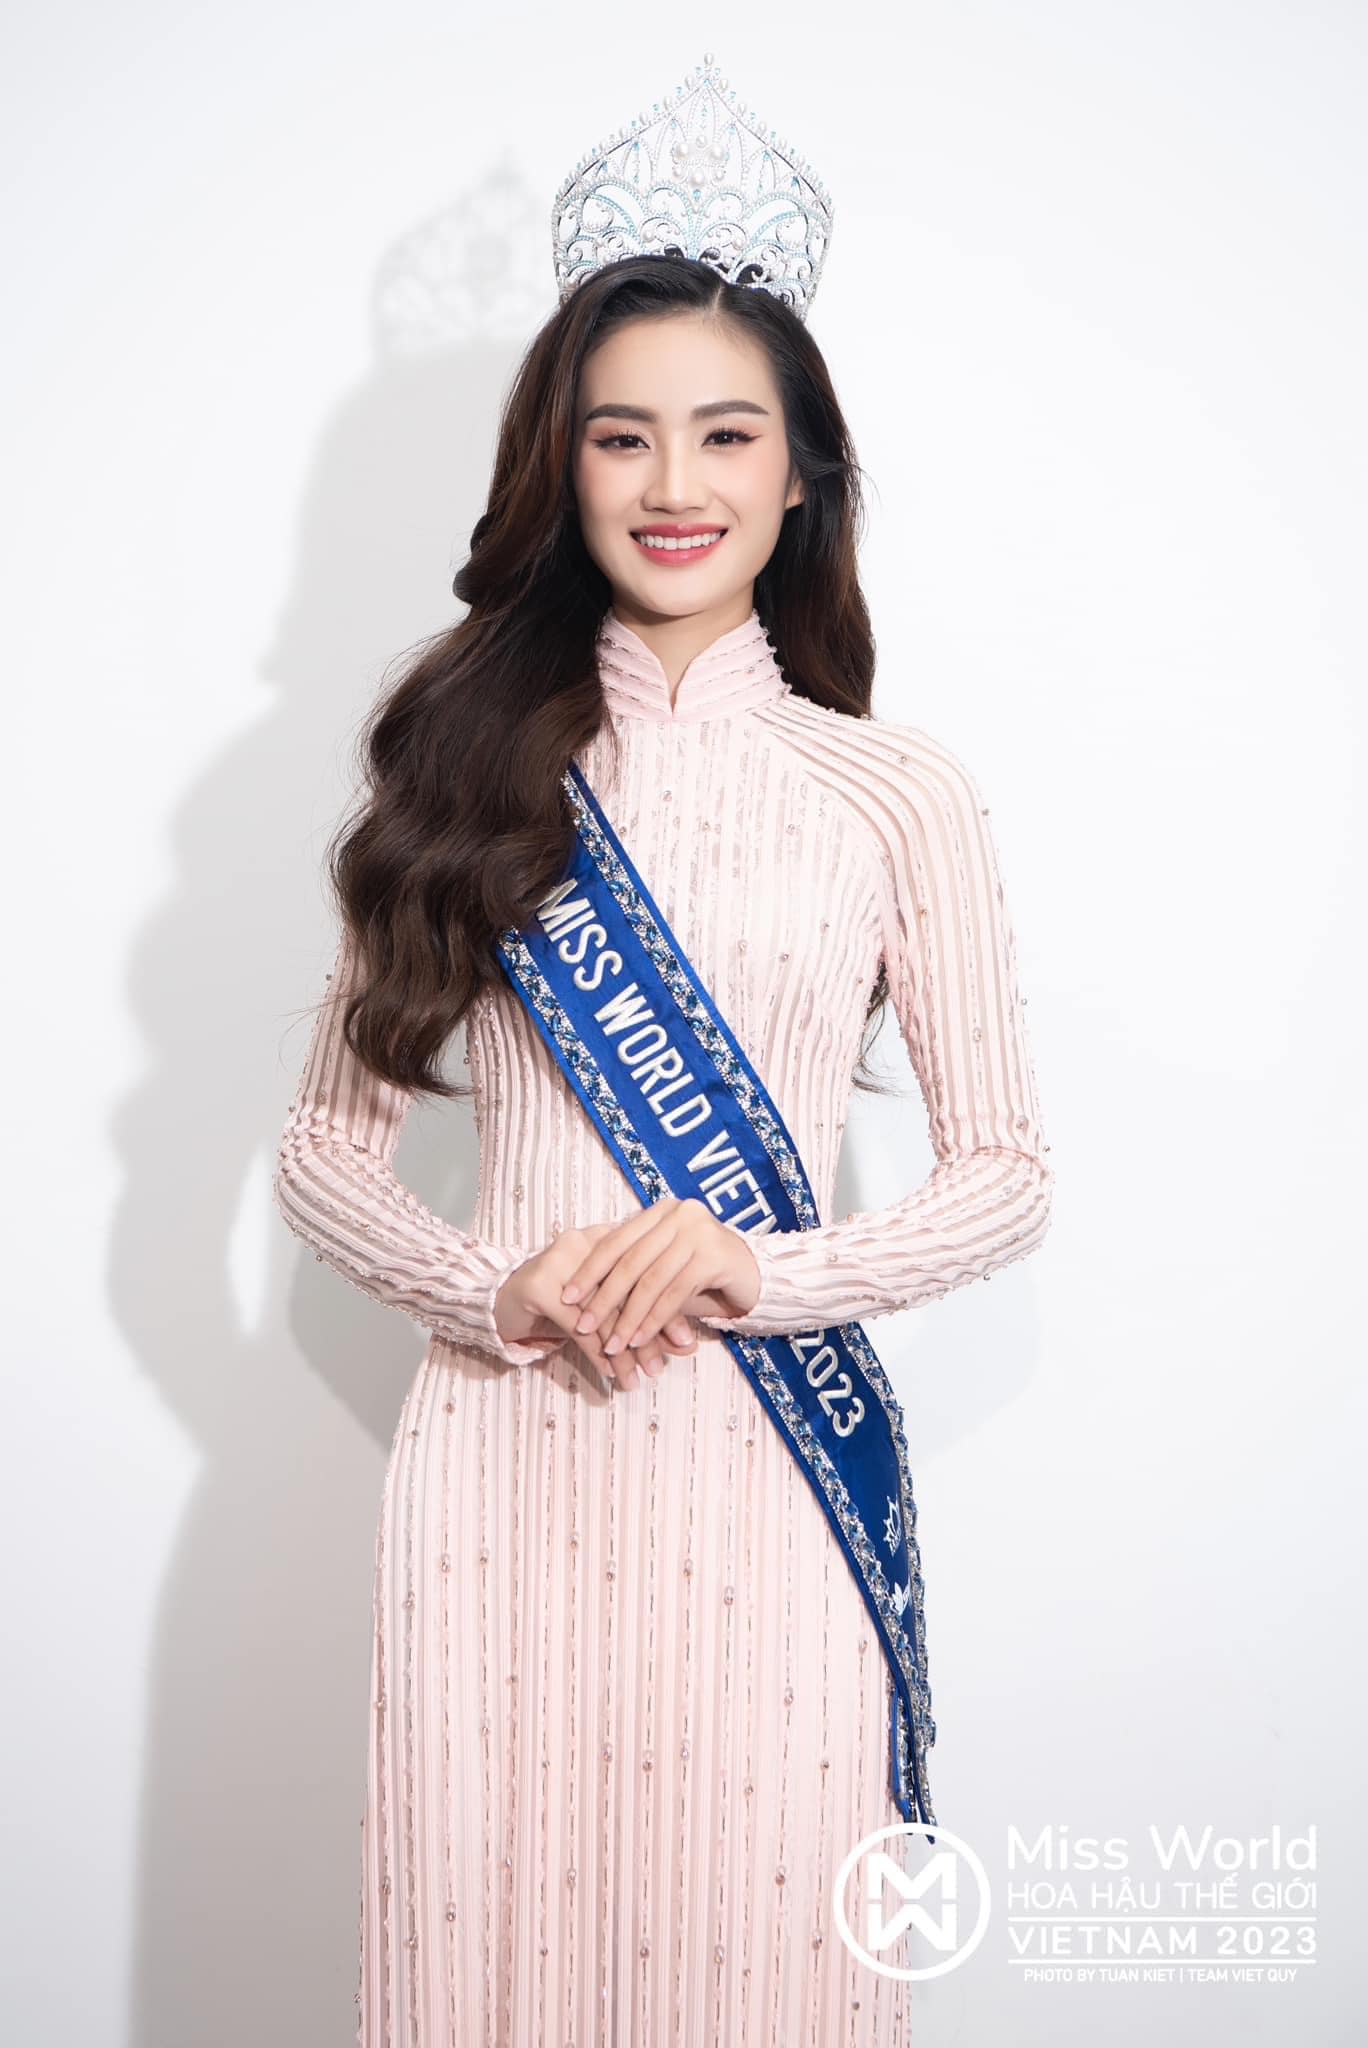 Tân Miss World Vietnam 2023 bị đề nghị tước bỏ danh hiệu chỉ sau 1 tuần đăng quang, chuyện gì đây? - Ảnh 3.